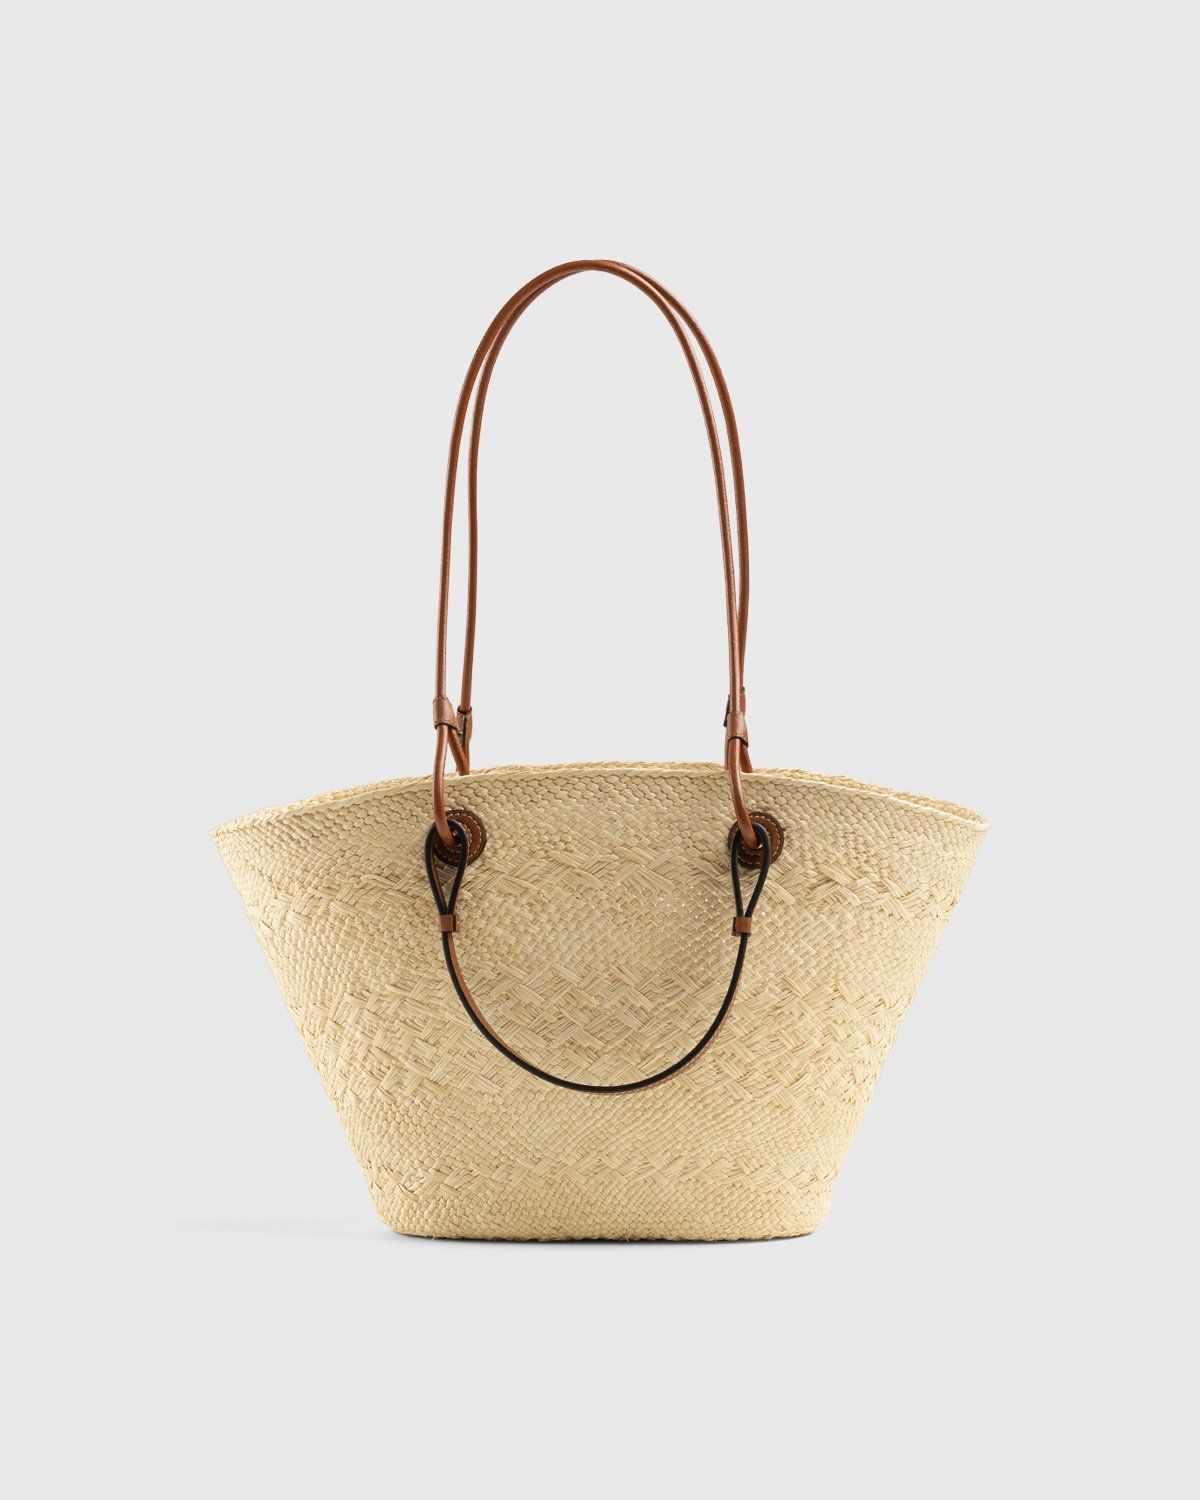 Loewe – Paula's Ibiza Anagram Basket Bag Natural/Tan - Bags - Beige - Image 2